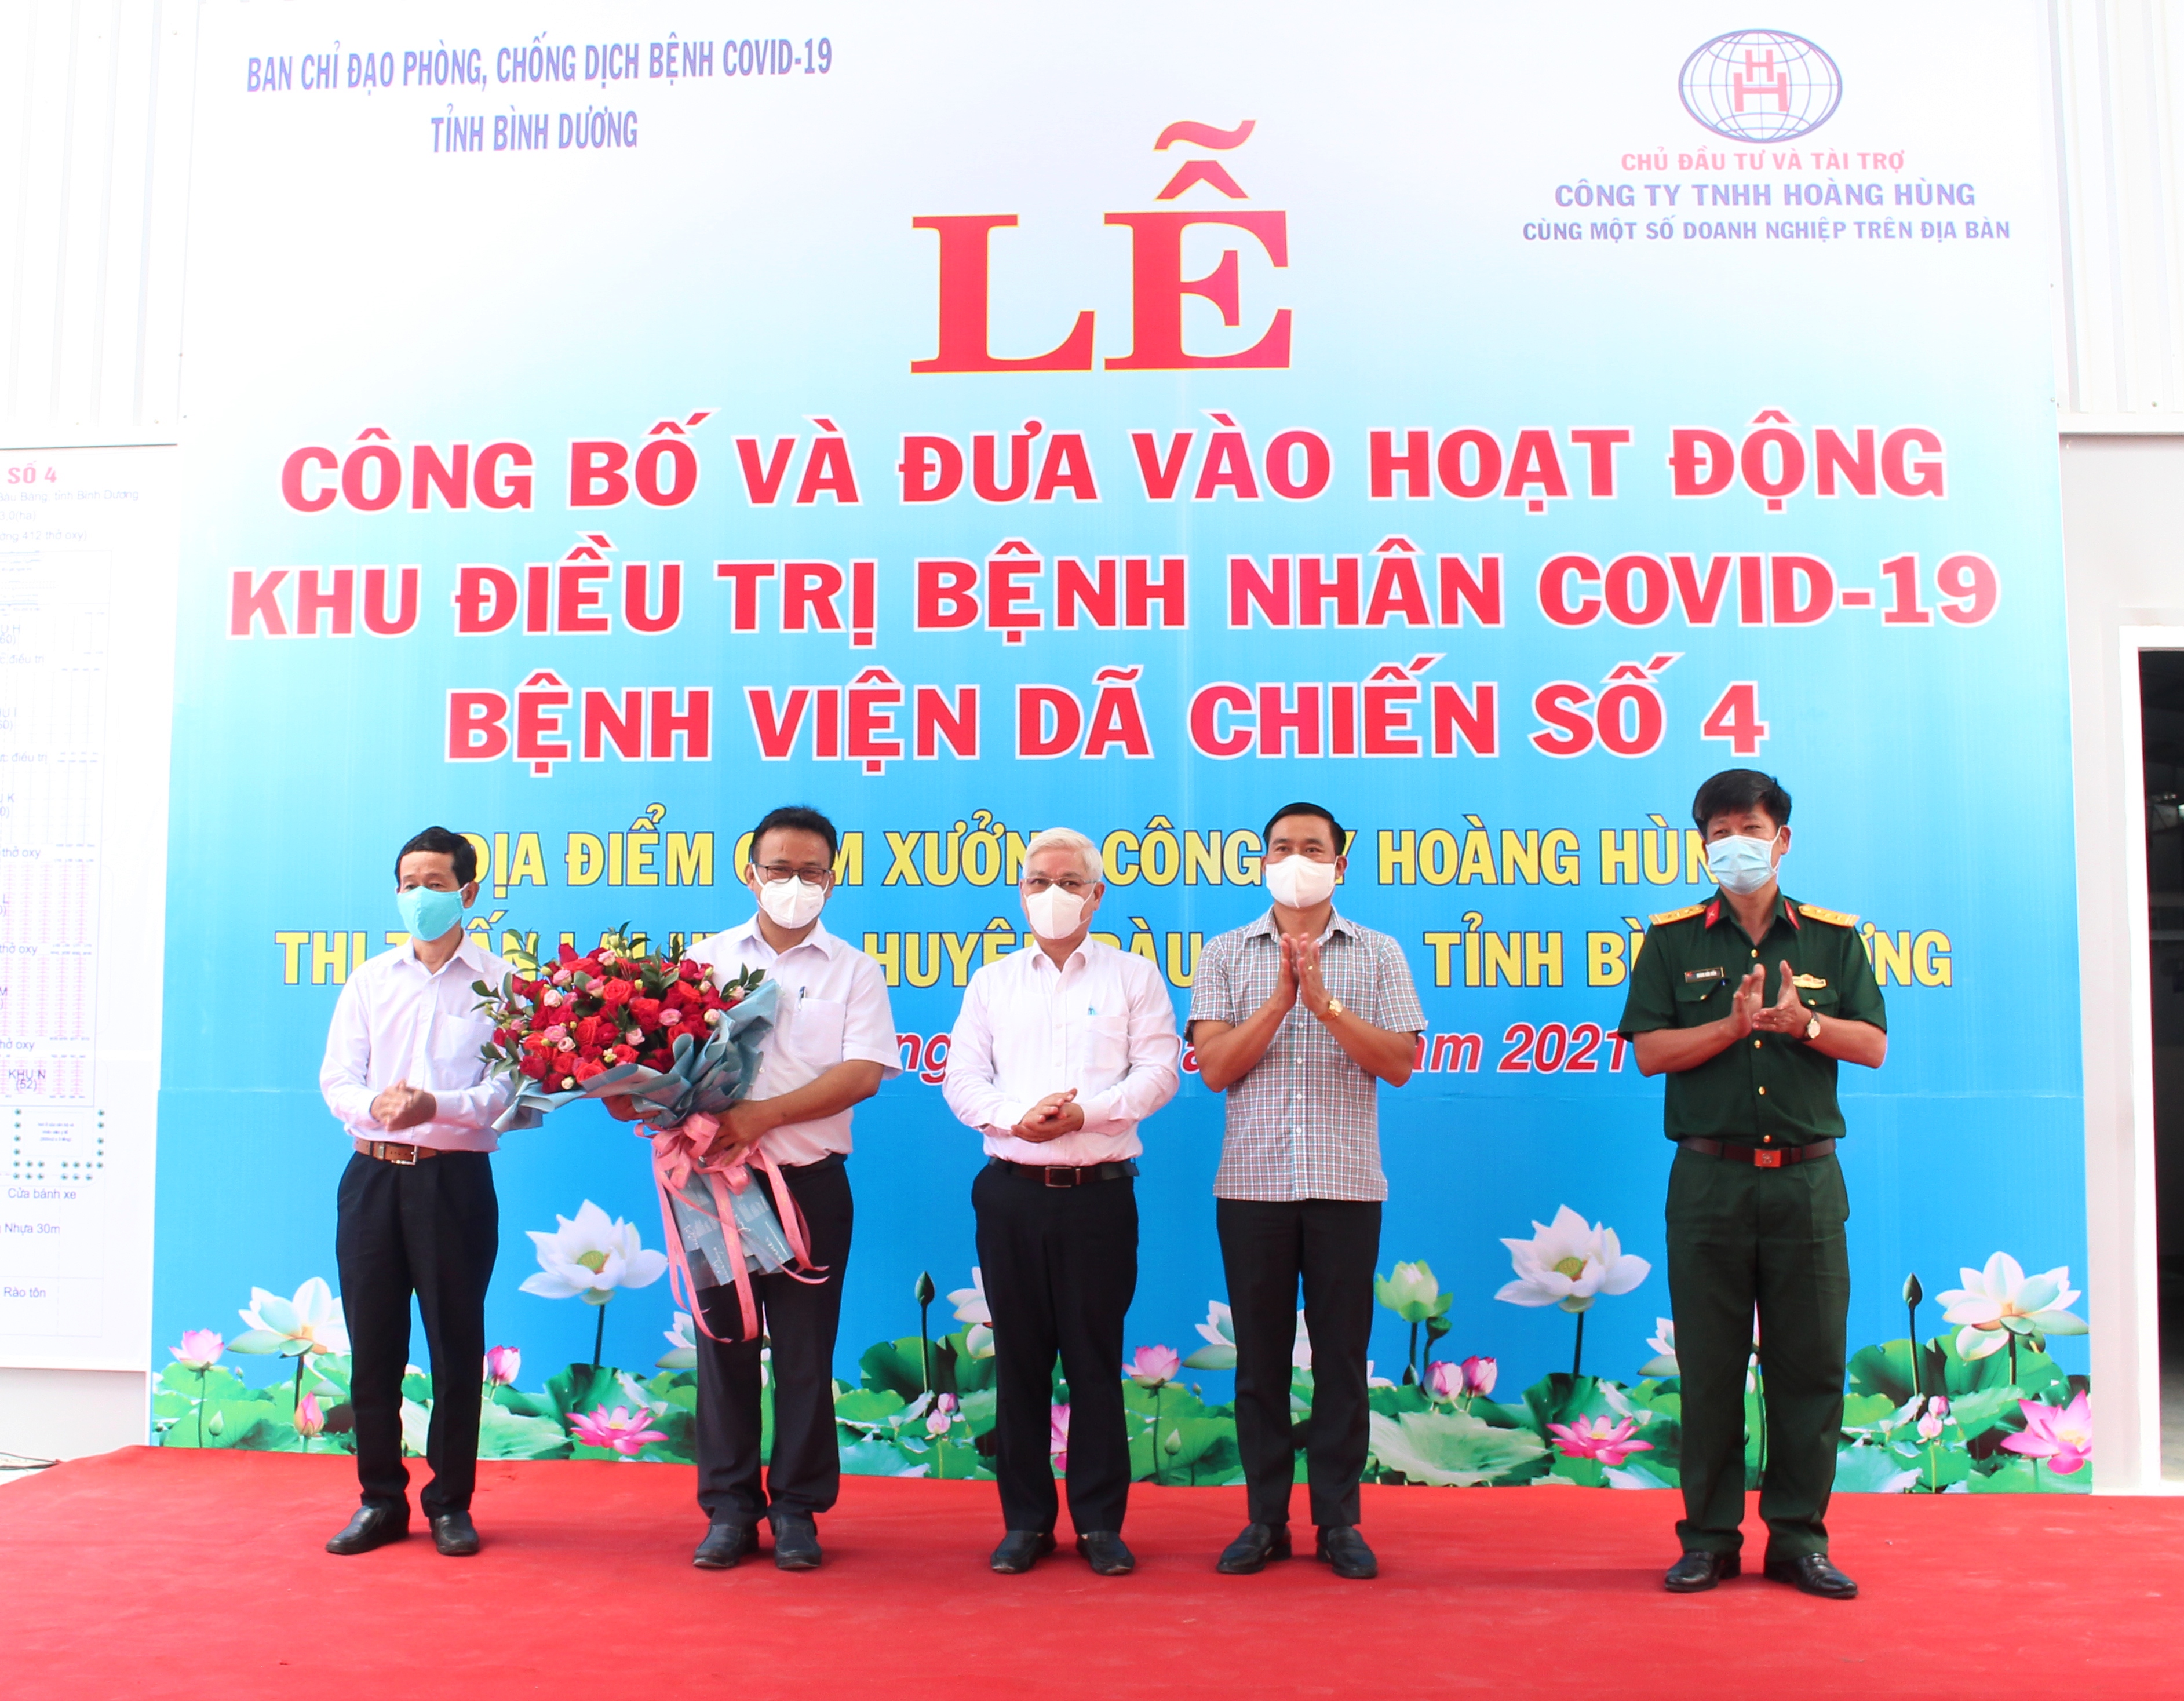 Lãnh đạo tỉnh tặng hoa Ban giám đốc Bệnh viện Dã chiến số 4 và Ban chỉ đạo phòng, chống dịch Covid-19 huyện Bàu Bàng.